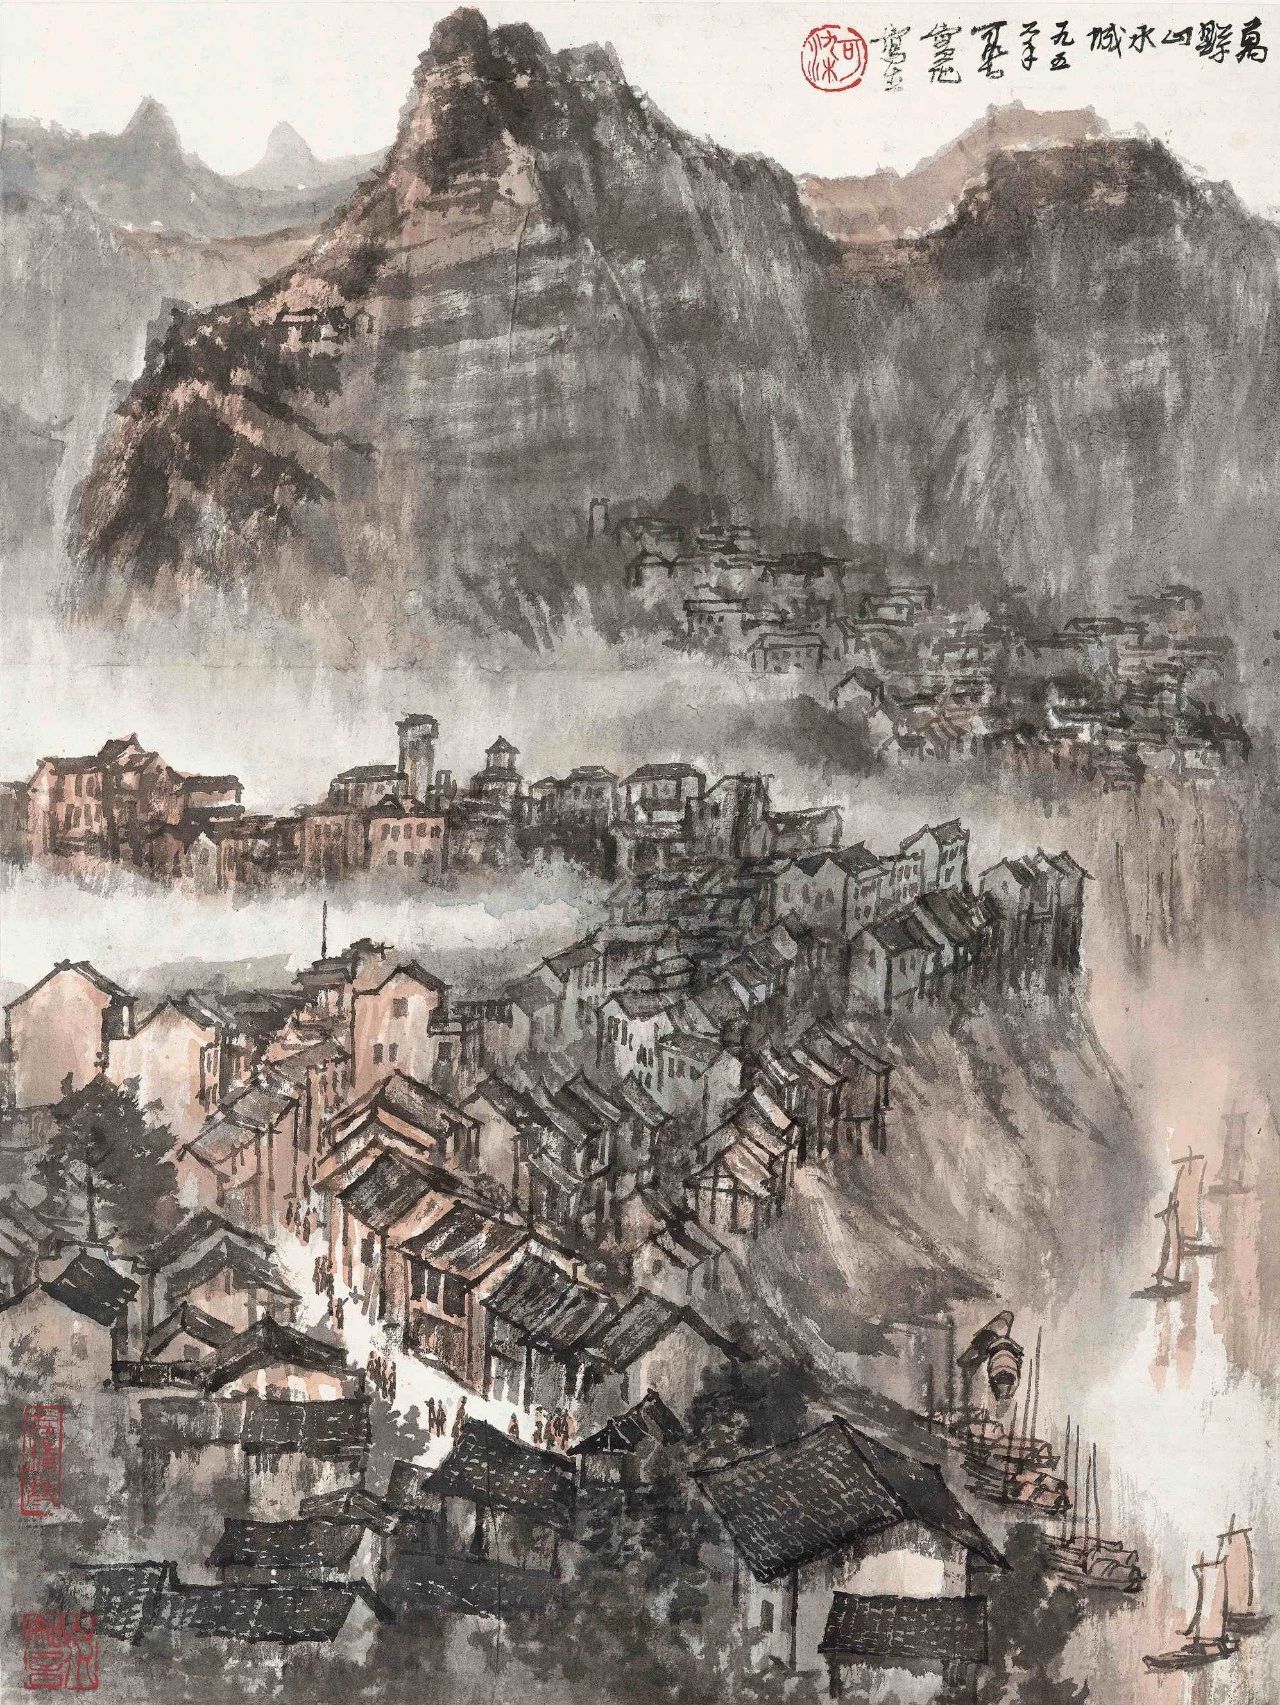 中国传统绘画不是一成不变的而是随着时代的发展不断发展